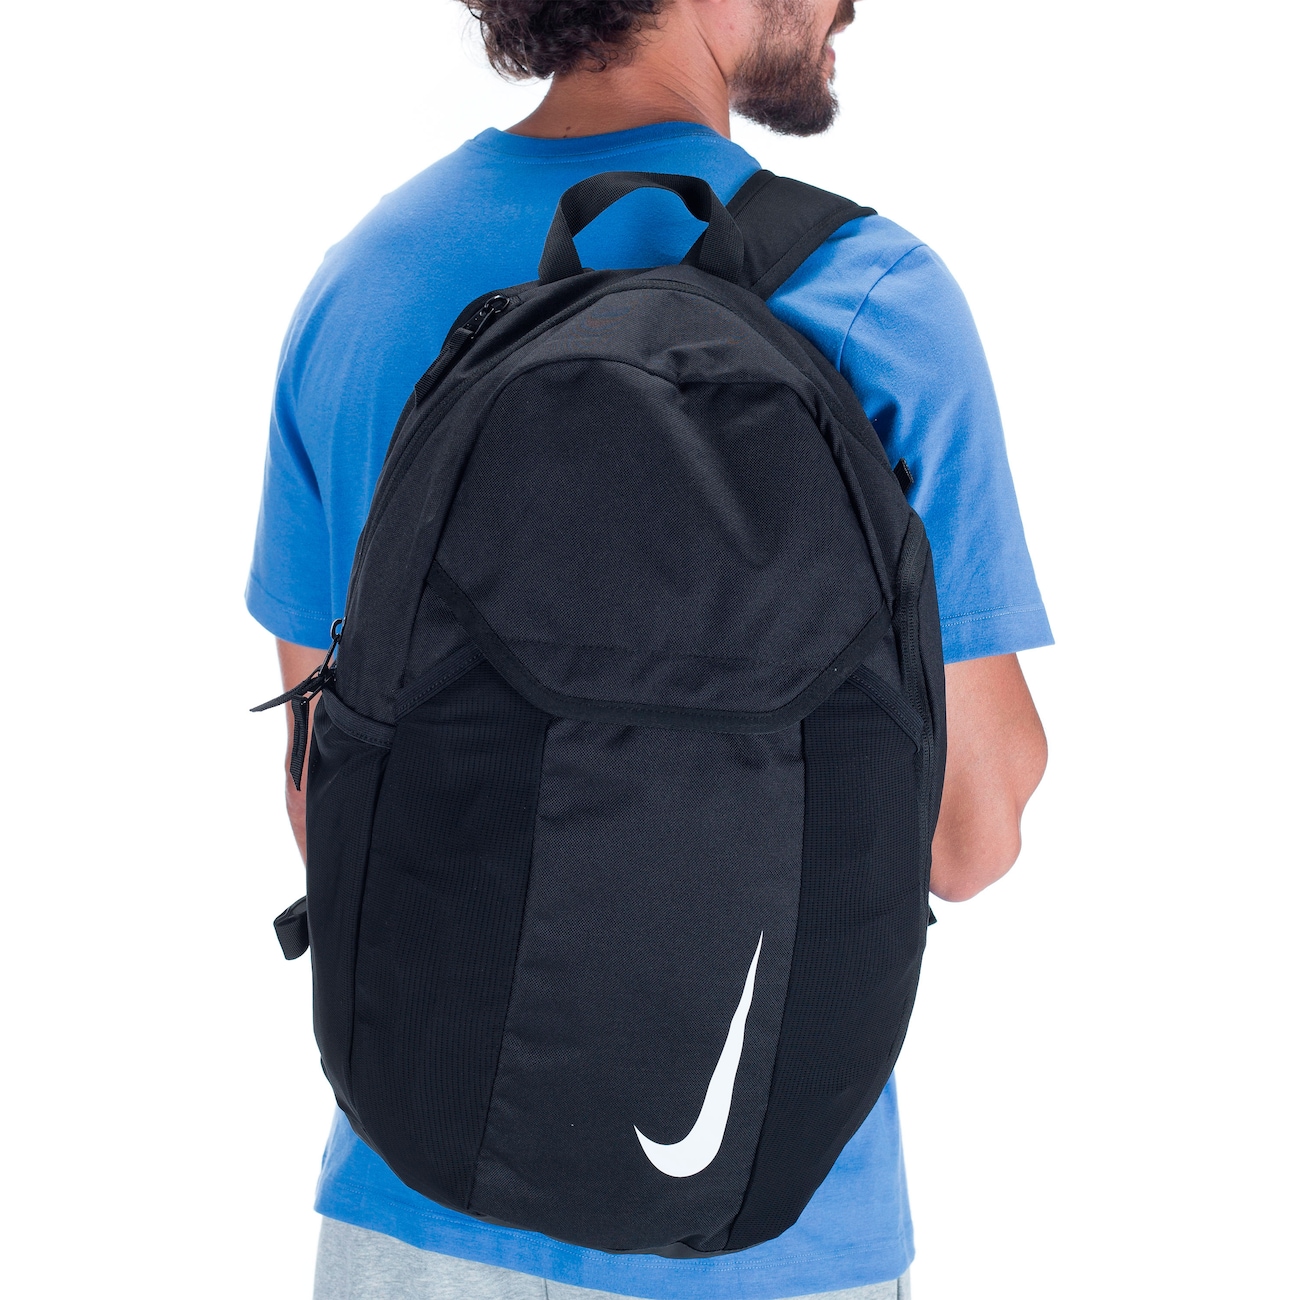 mochila nike academy backpack